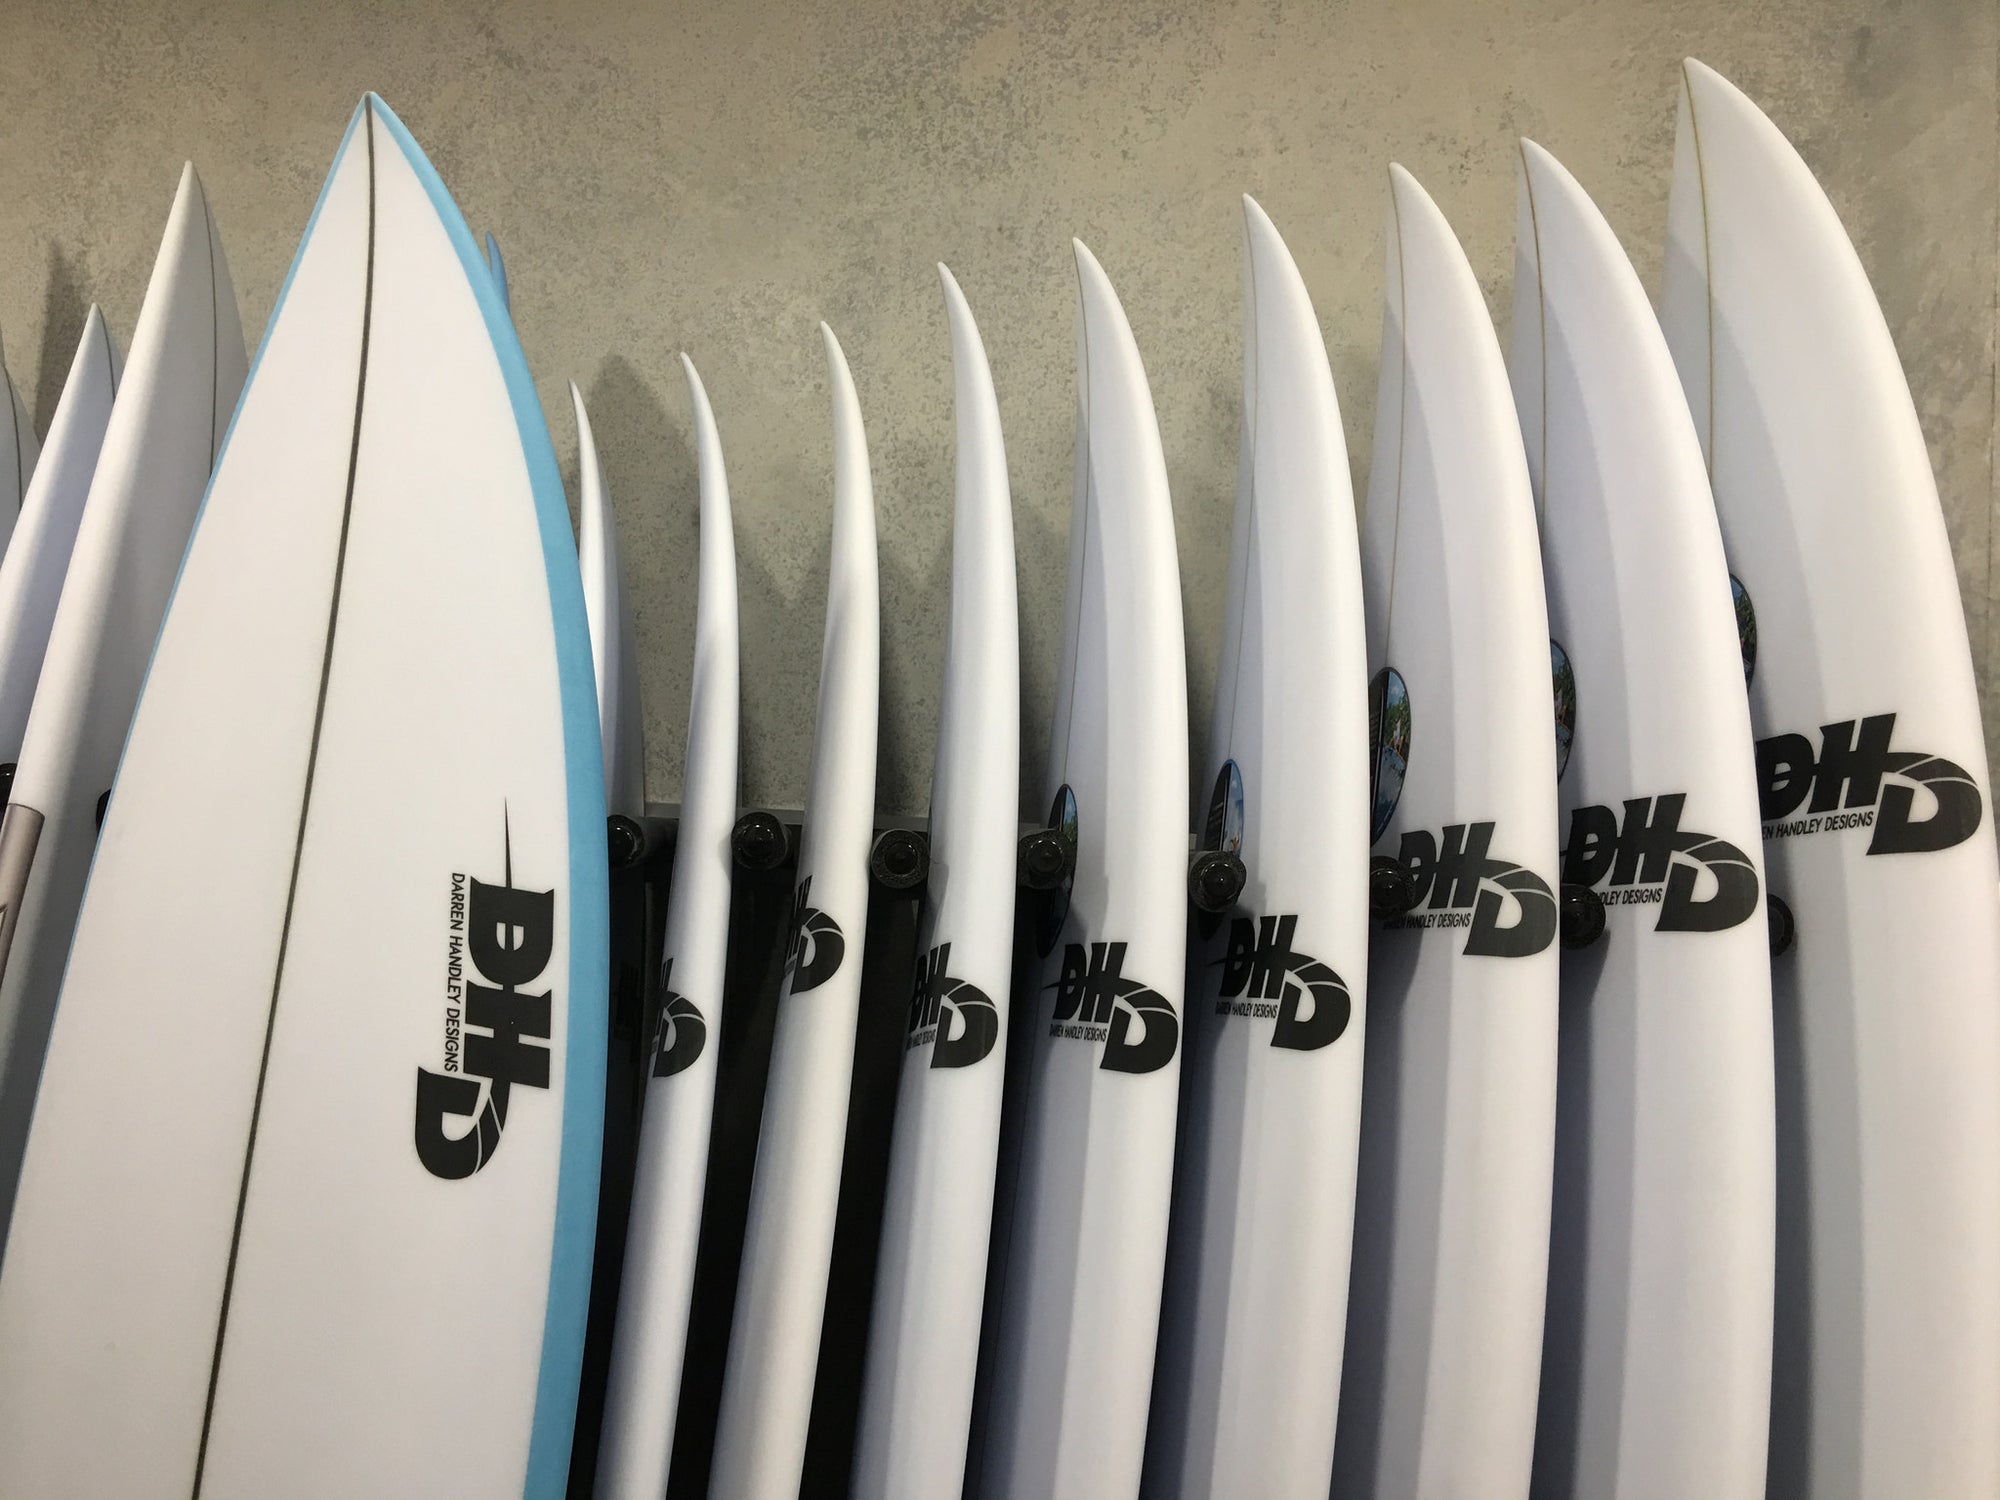 DHD (Darren Handley Designs) Surfboards